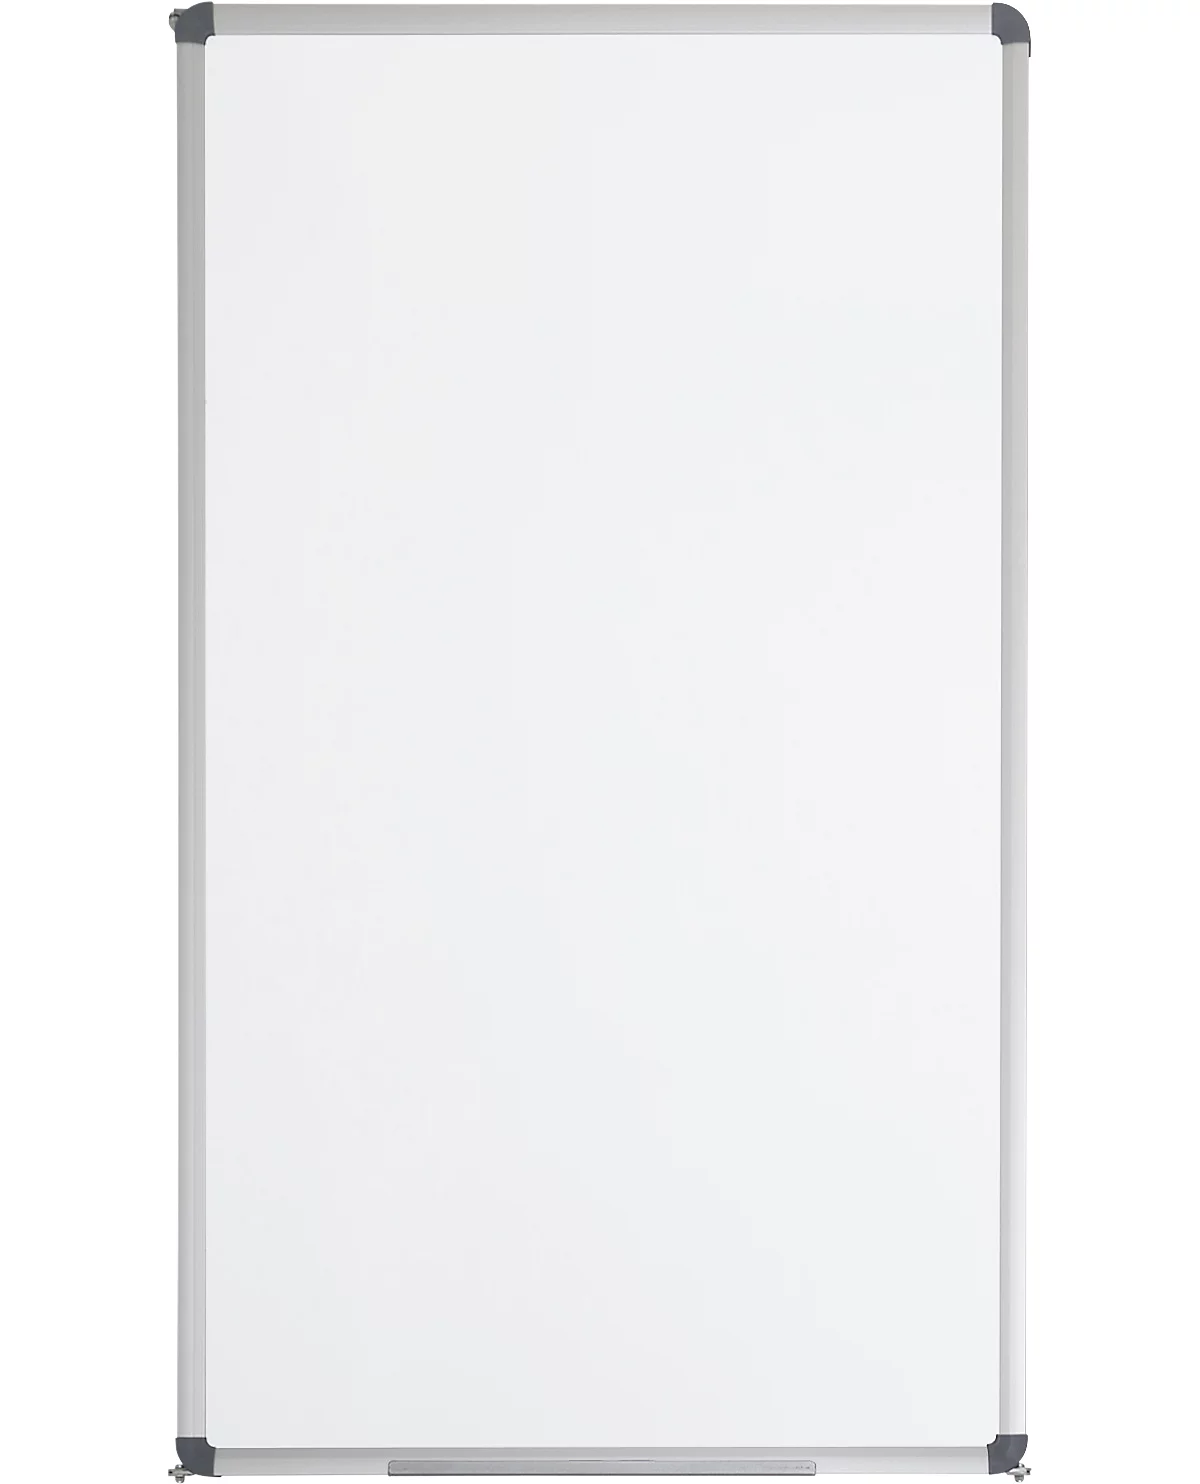 Whiteboard-Klapptafel MAULstandard, grau kunststoffbeschichtet, magnethaftend, 1 Flügel, B 600 x H 1000 mm